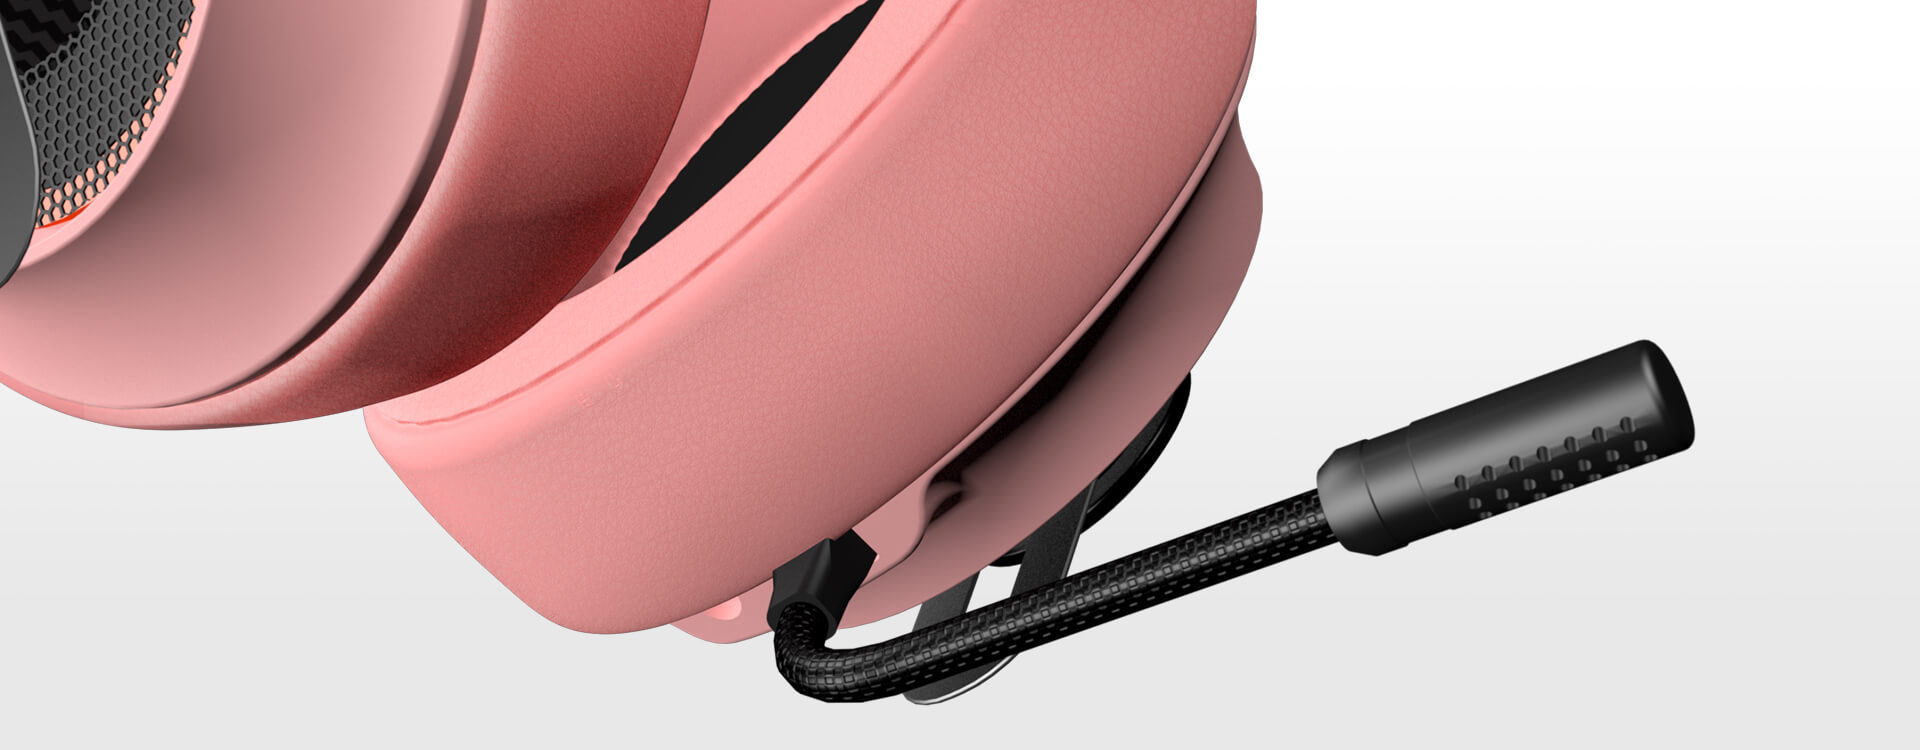 Buy Cougar Phontum Essential Pink Gaming Headphones | Headsets